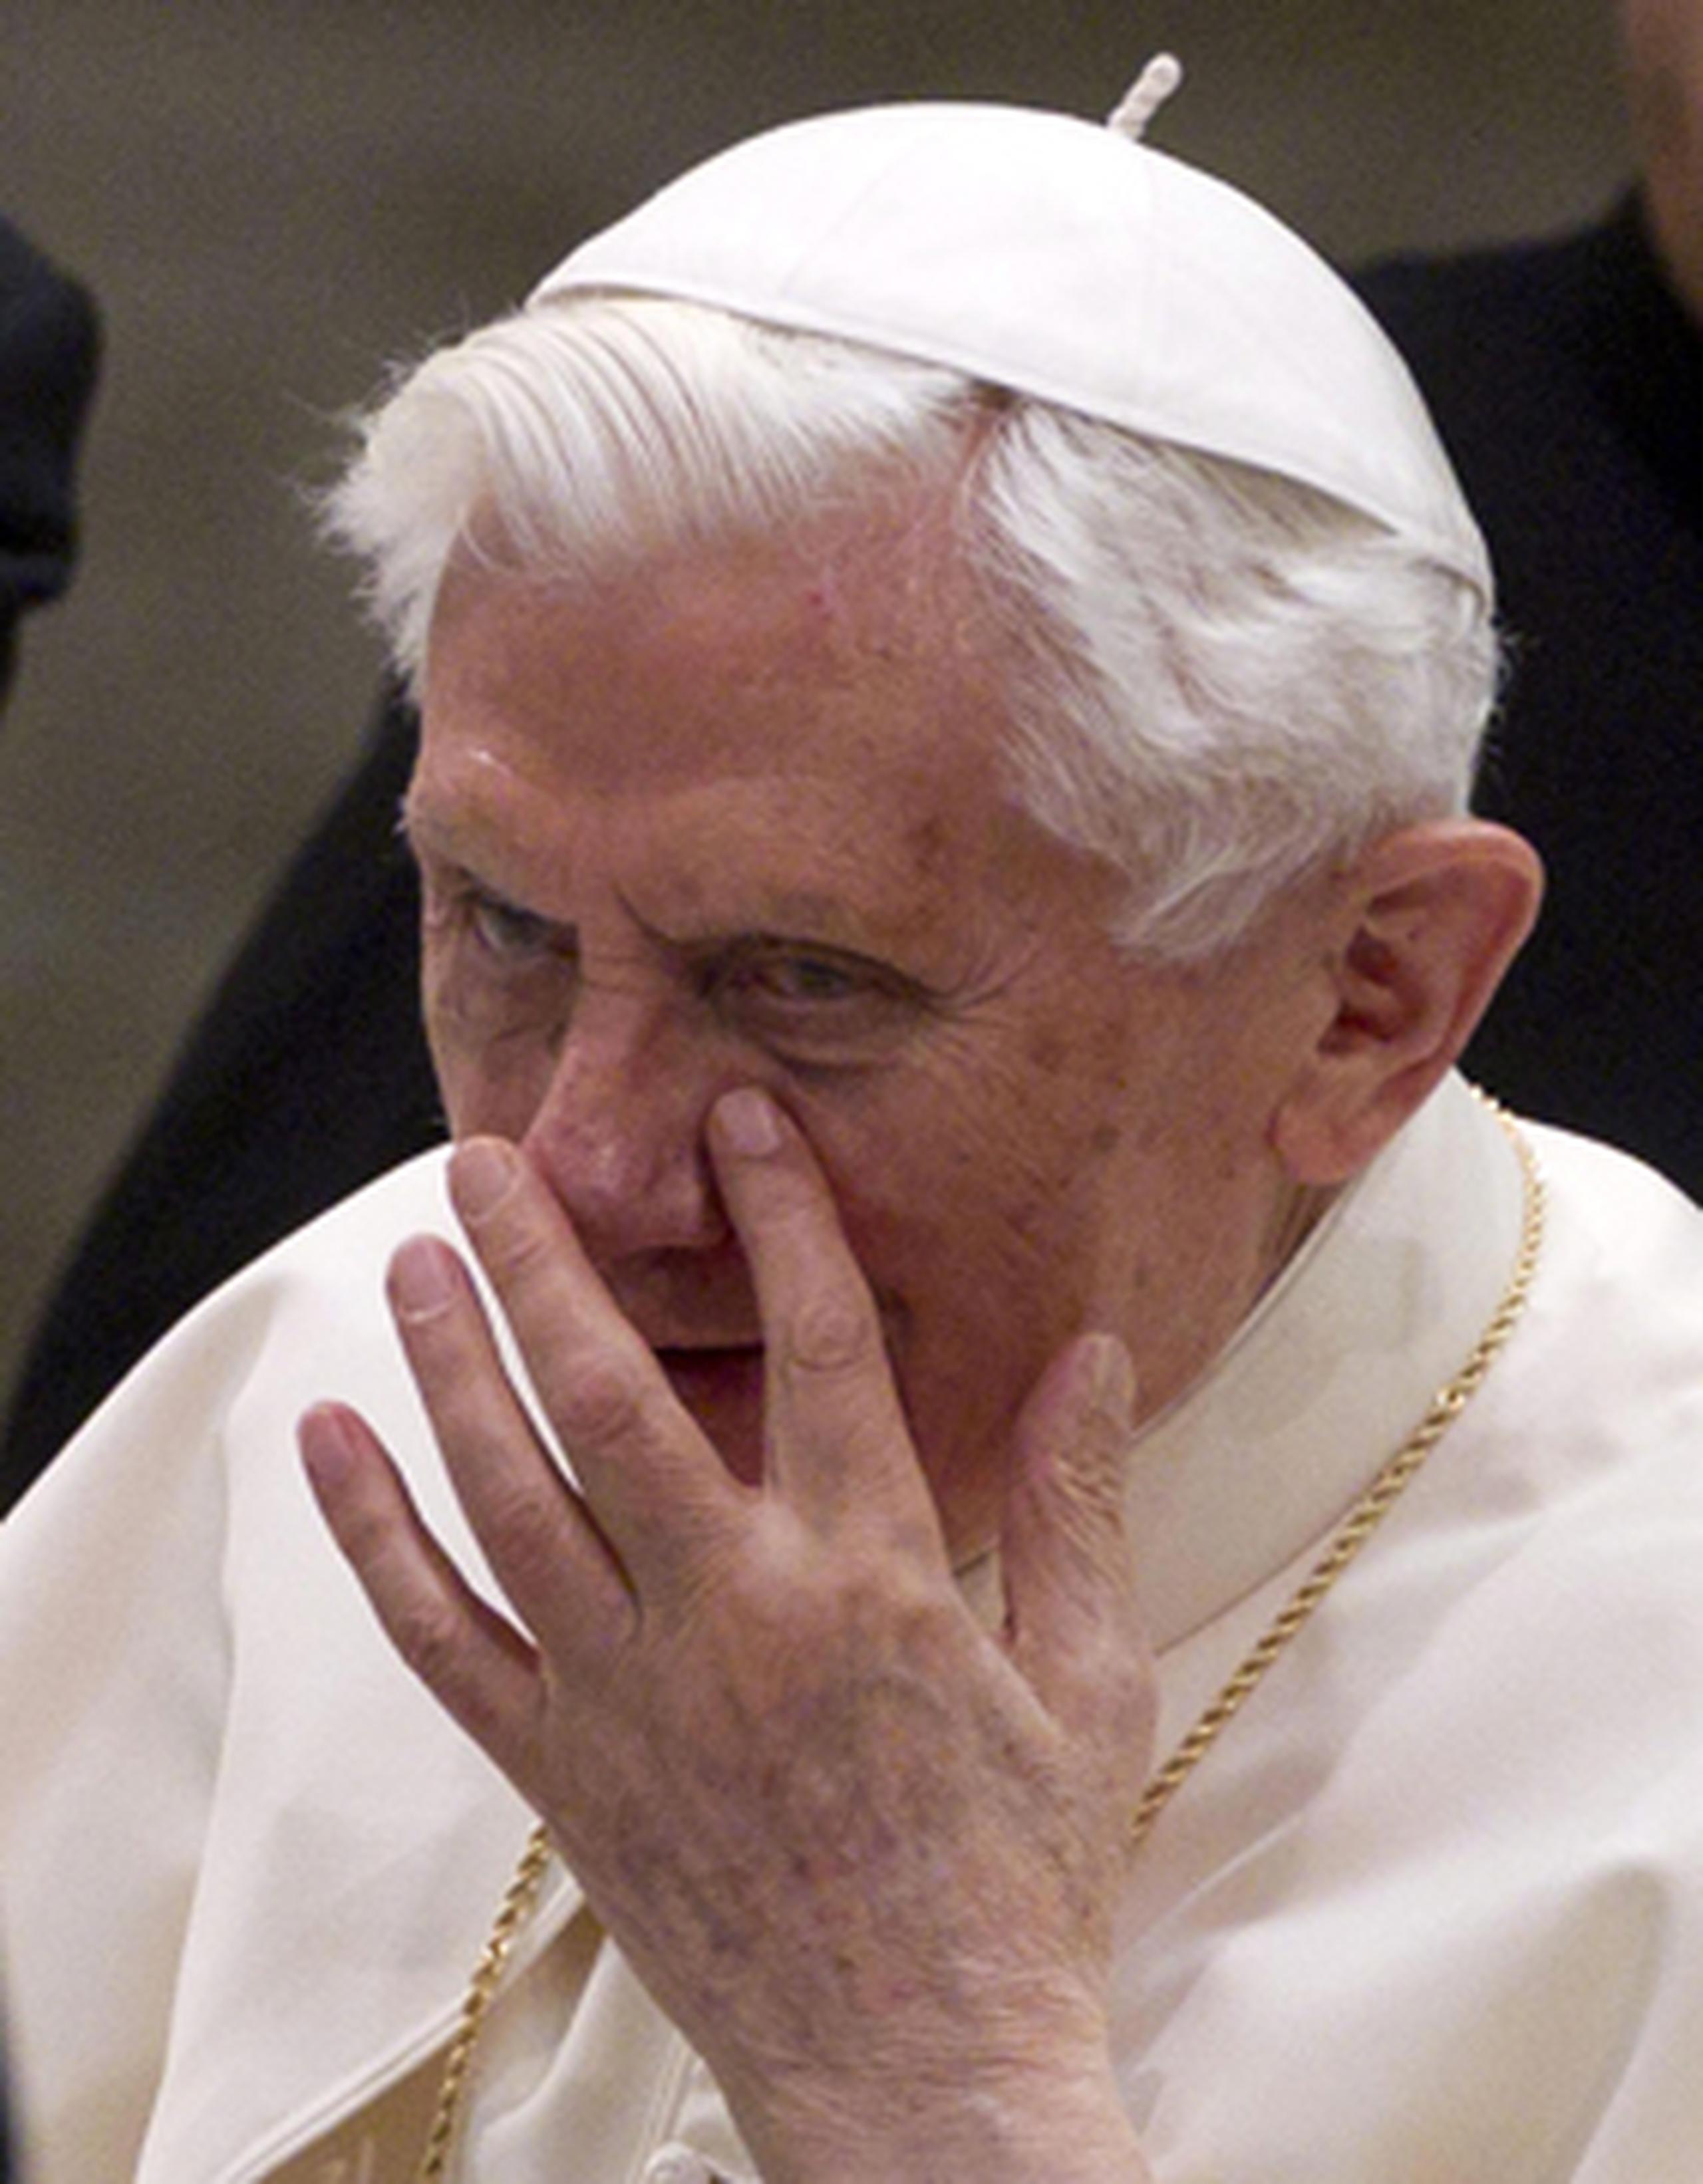 Benedicto XVI, de casi 86 años, aseguró hoy a los fieles que ha renunciado al Pontificado "en plena libertad por el bien de la Iglesia" y tras constatar que "le faltan las fuerzas necesarias para ejercer con el vigor necesario el ministerio petrino" (el papado). (EFE/Claudio Peri)